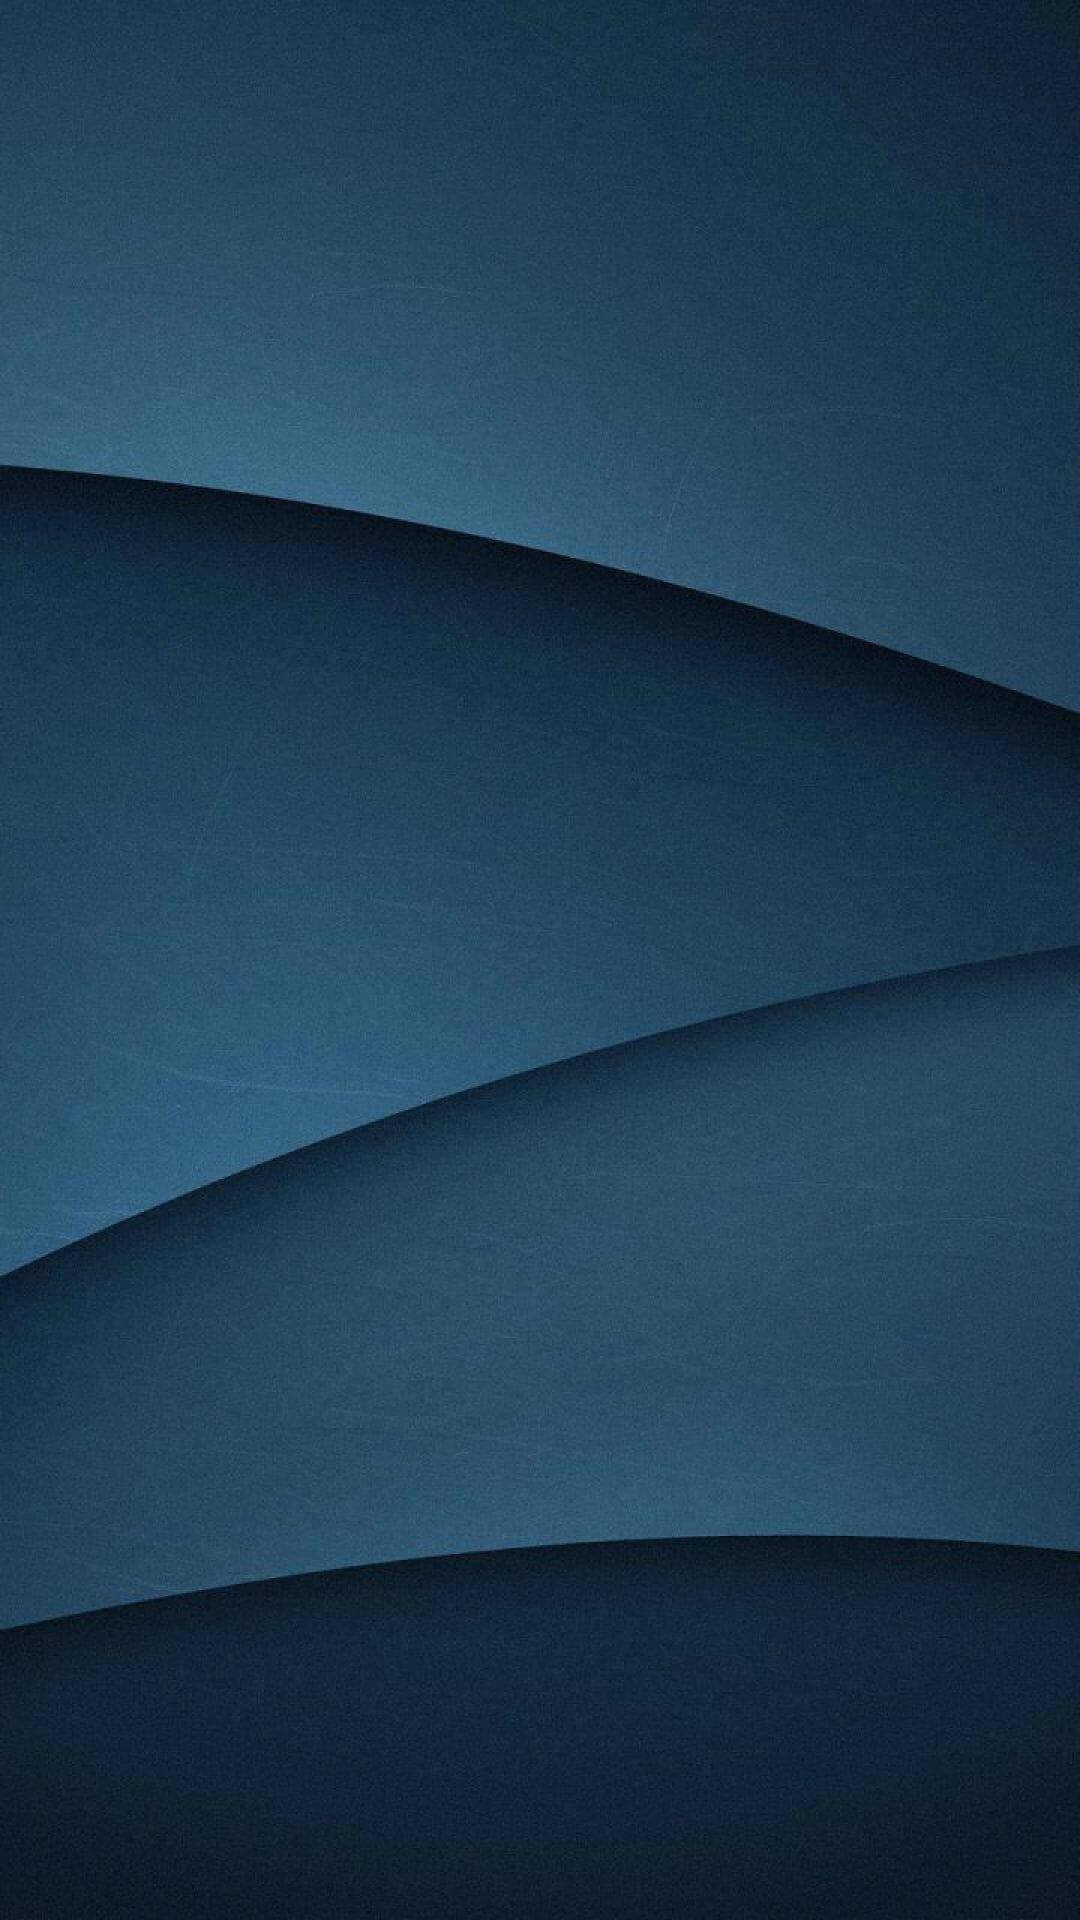 Dark Blue Aesthetic For Iphone Wallpaper